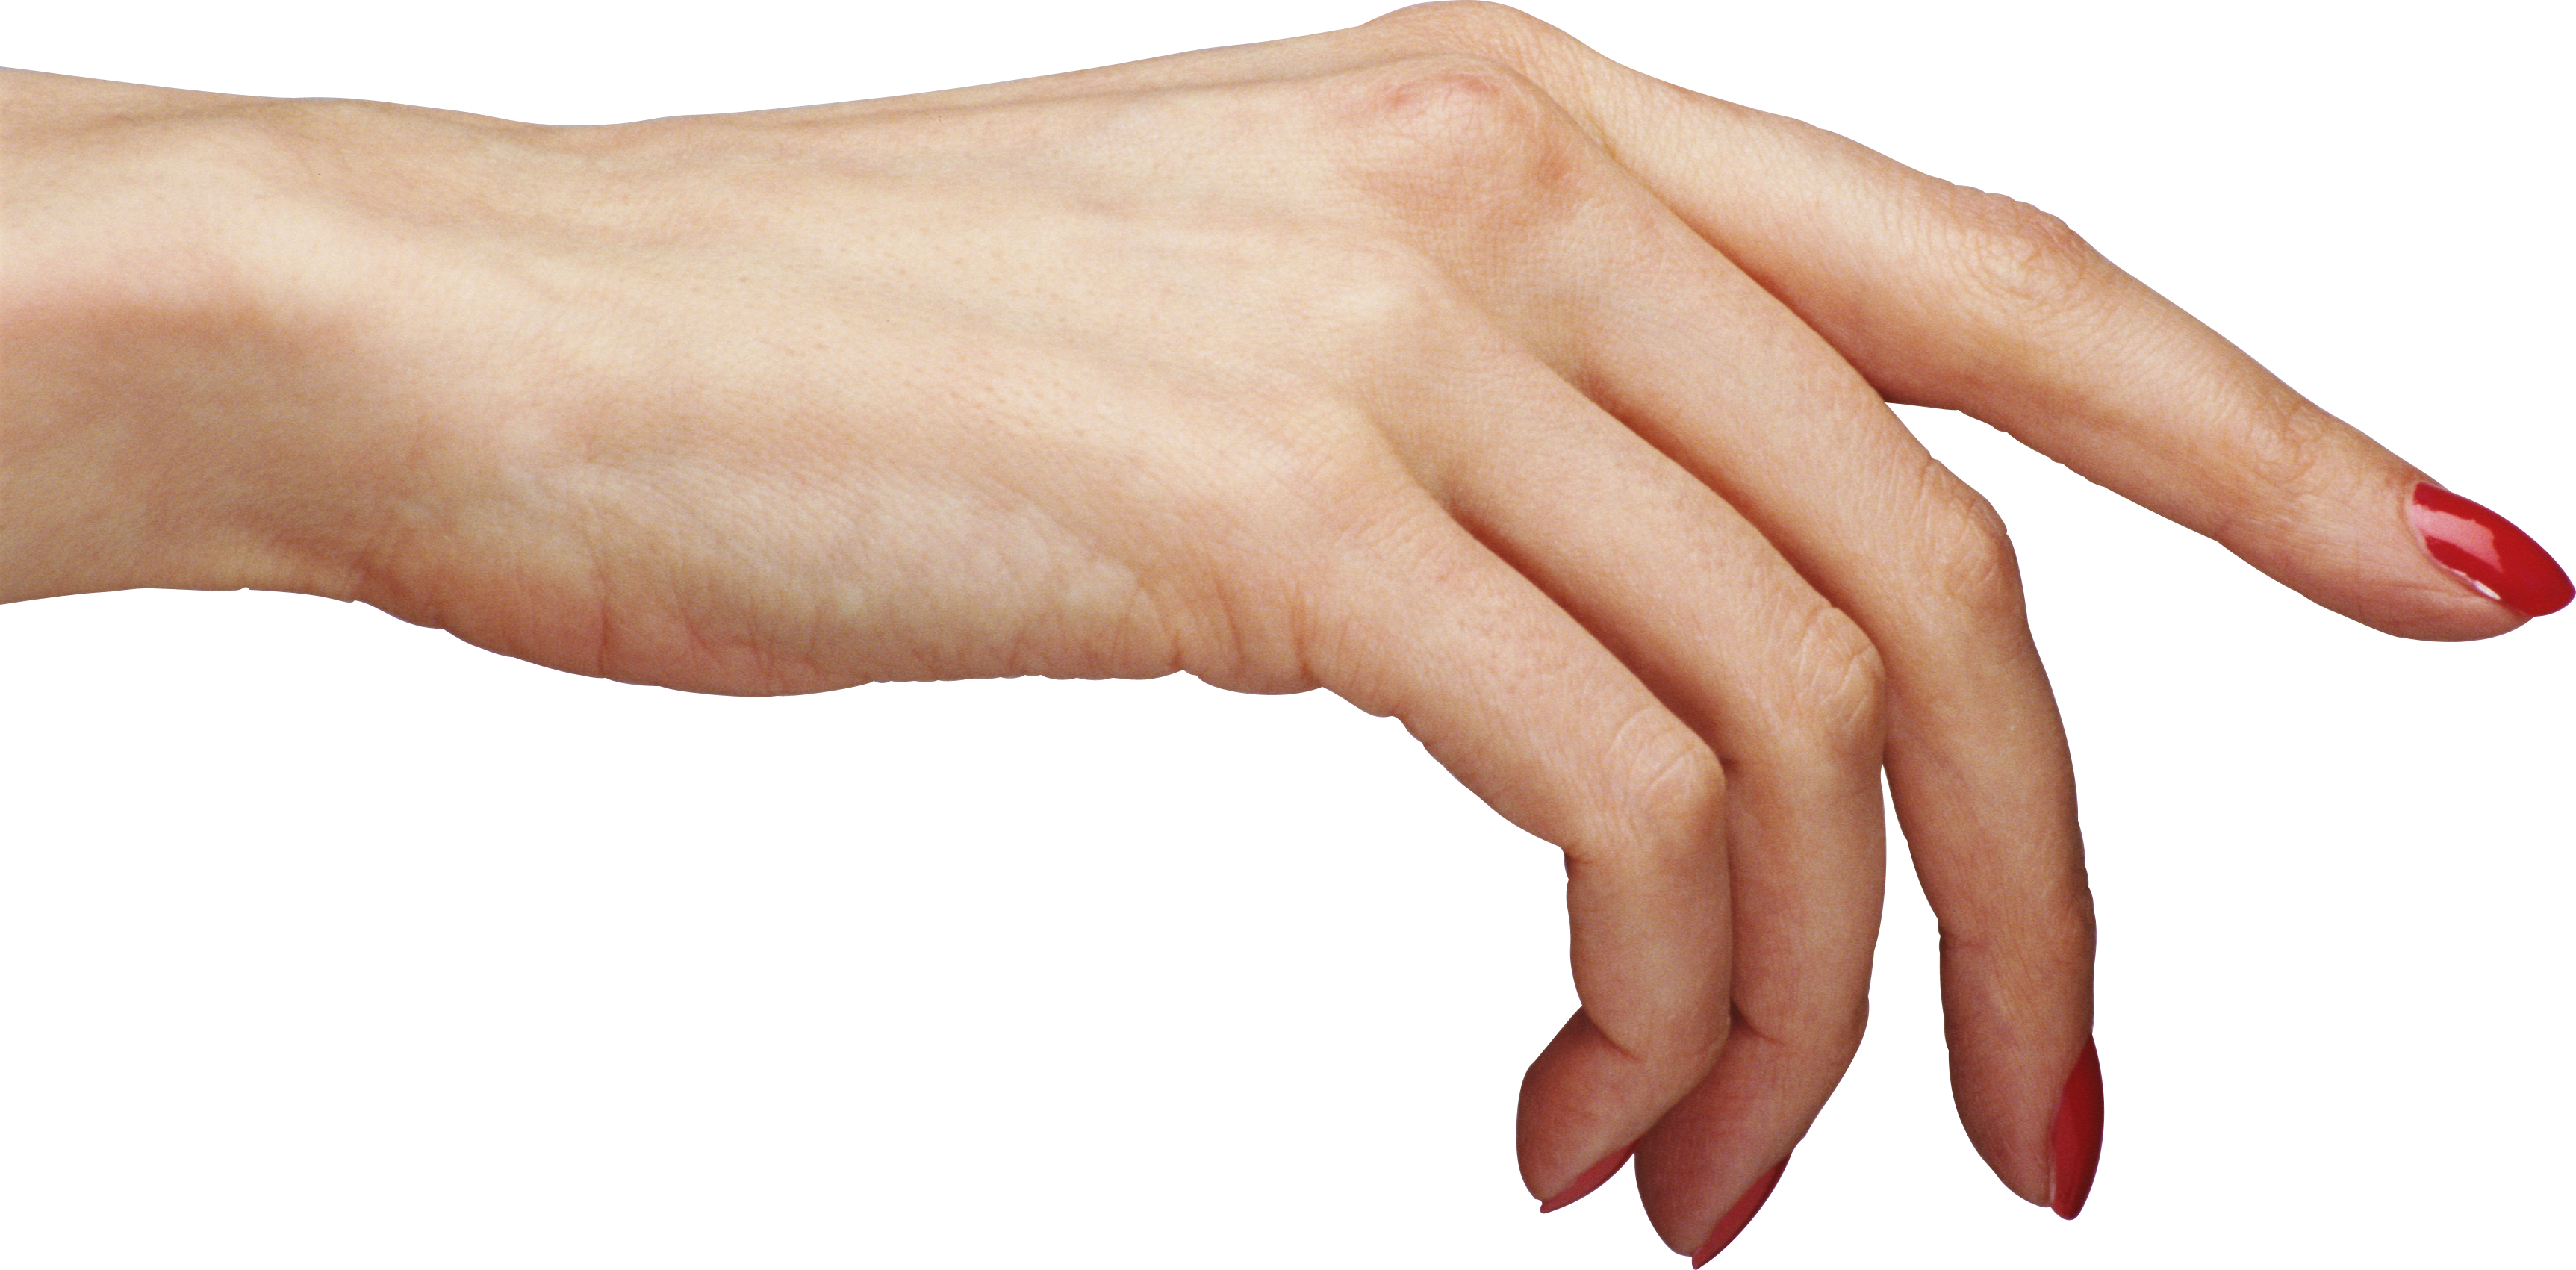 Рука 22 см. Кисть руки. Женская рука. Женская кисть руки. Человеческая рука.